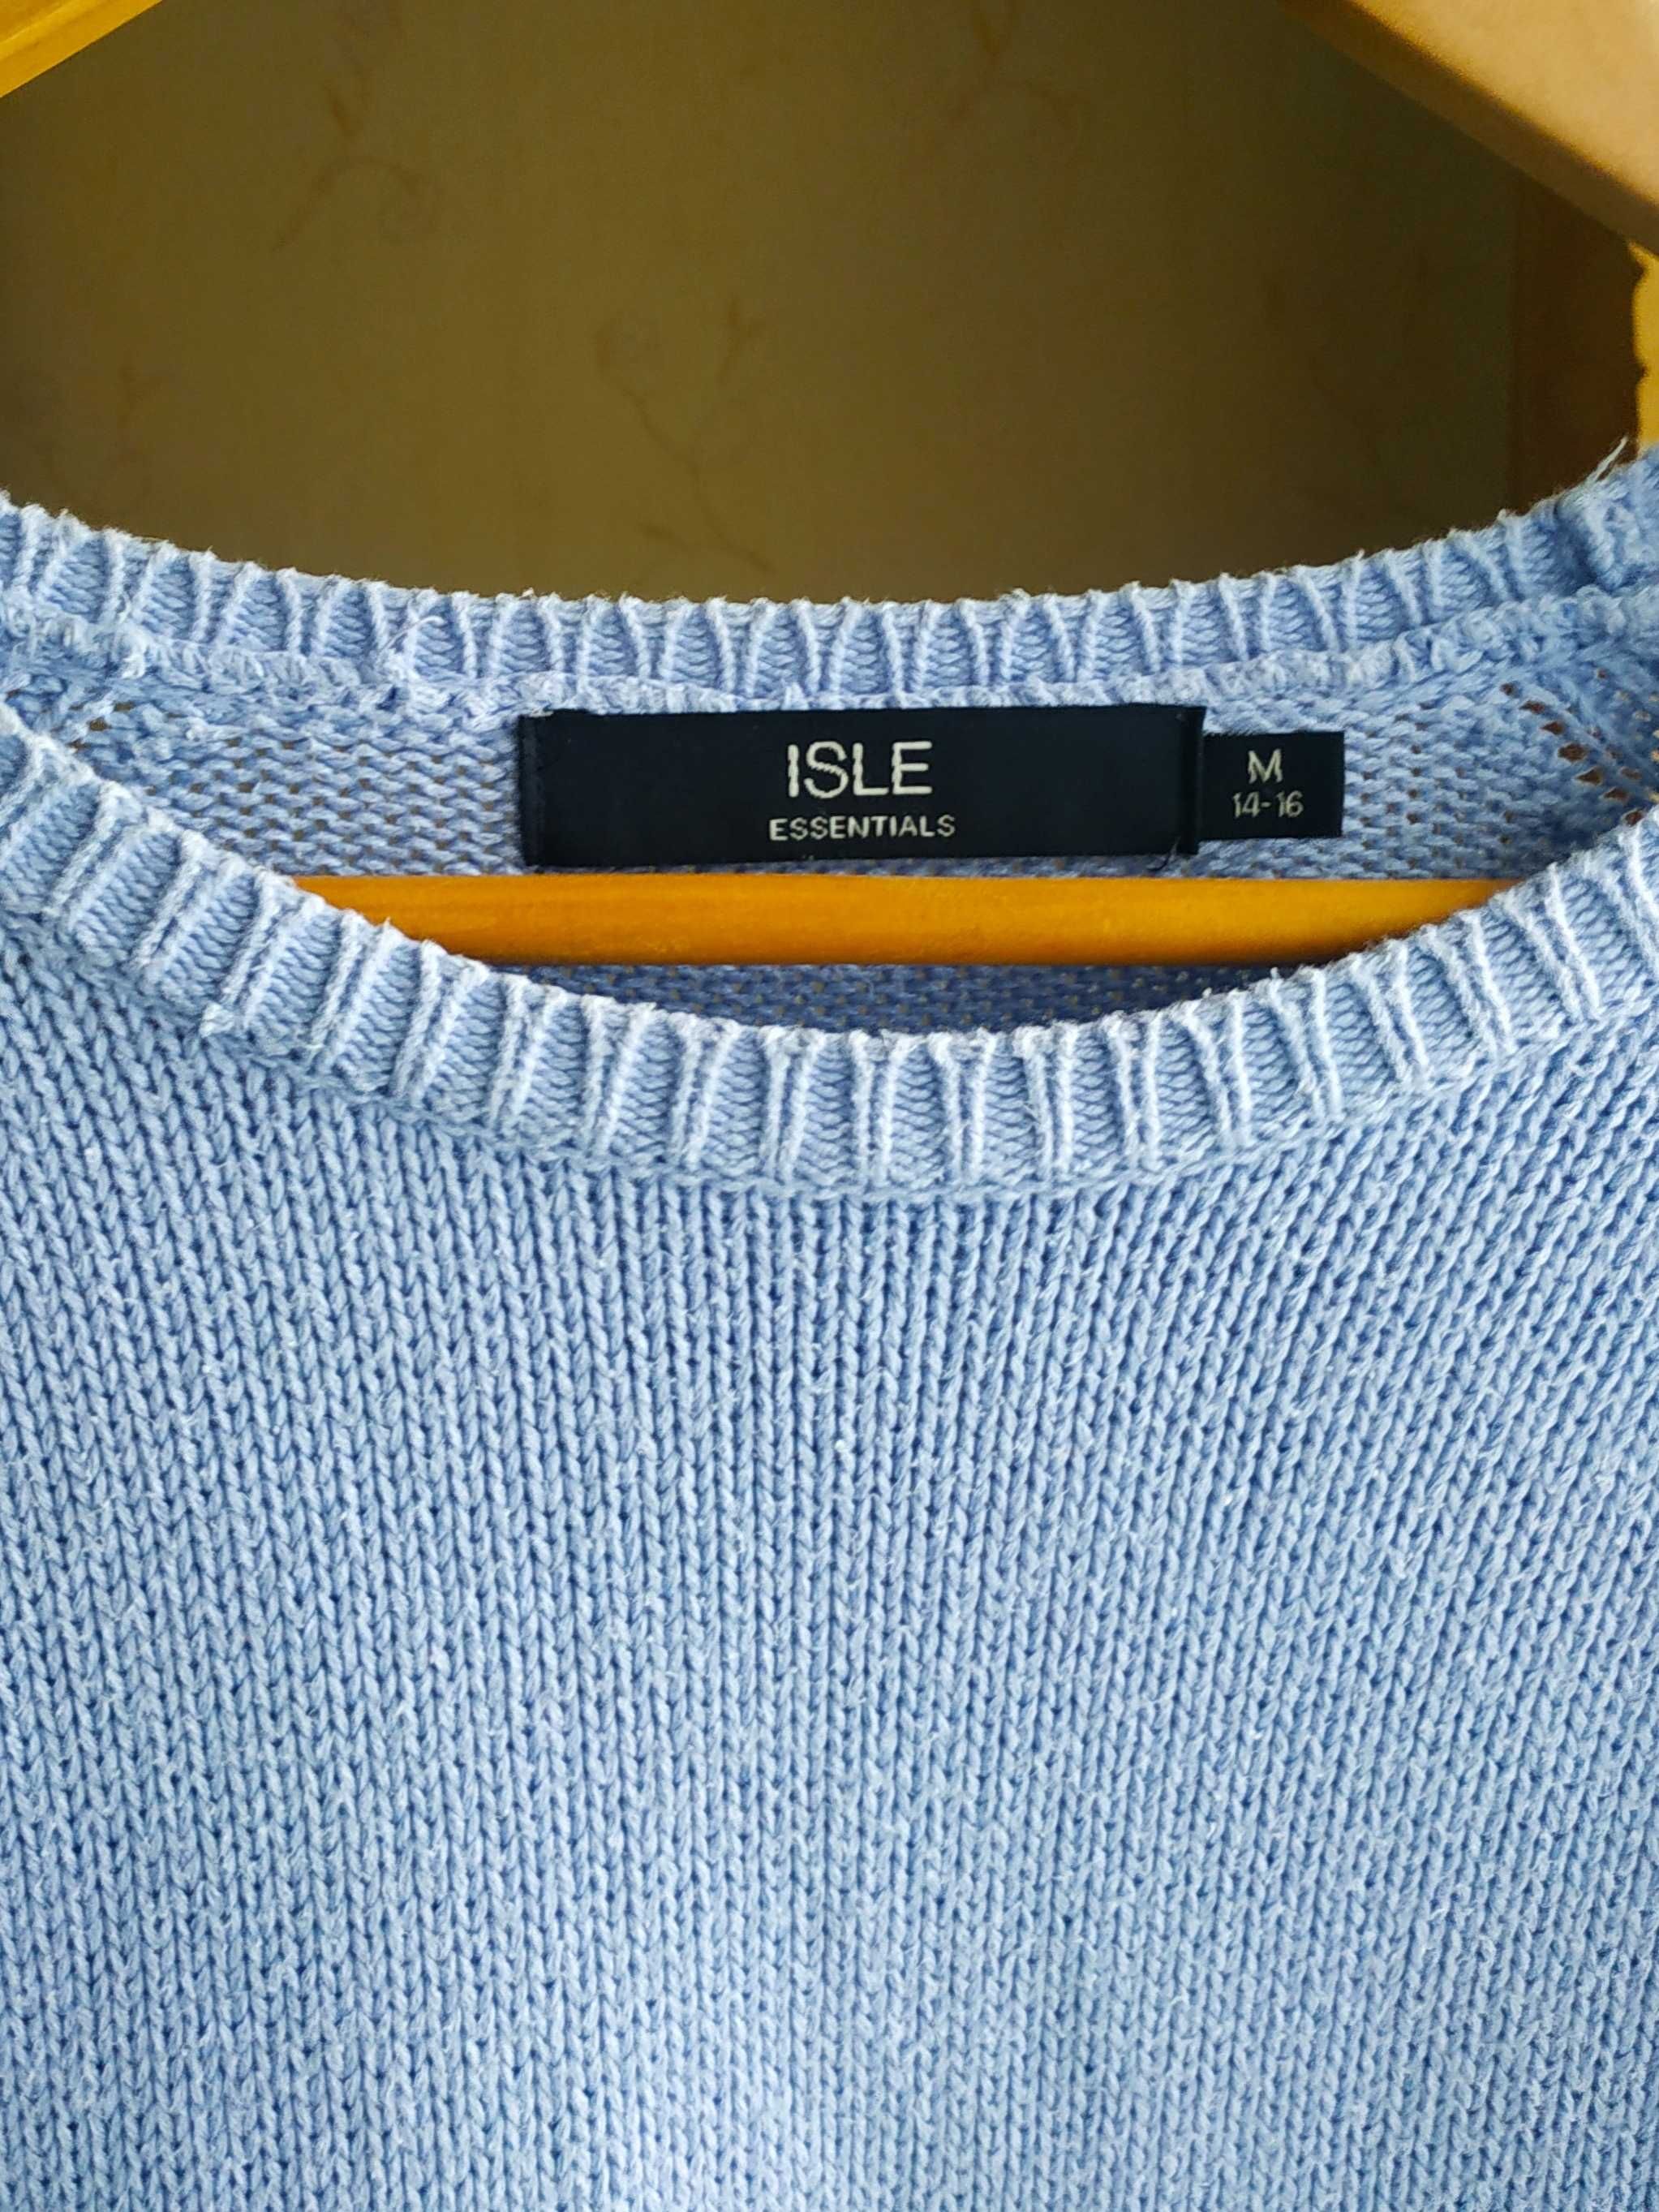 Светр Isle Essentials блакитний джемпер кофта оверсайз свитер